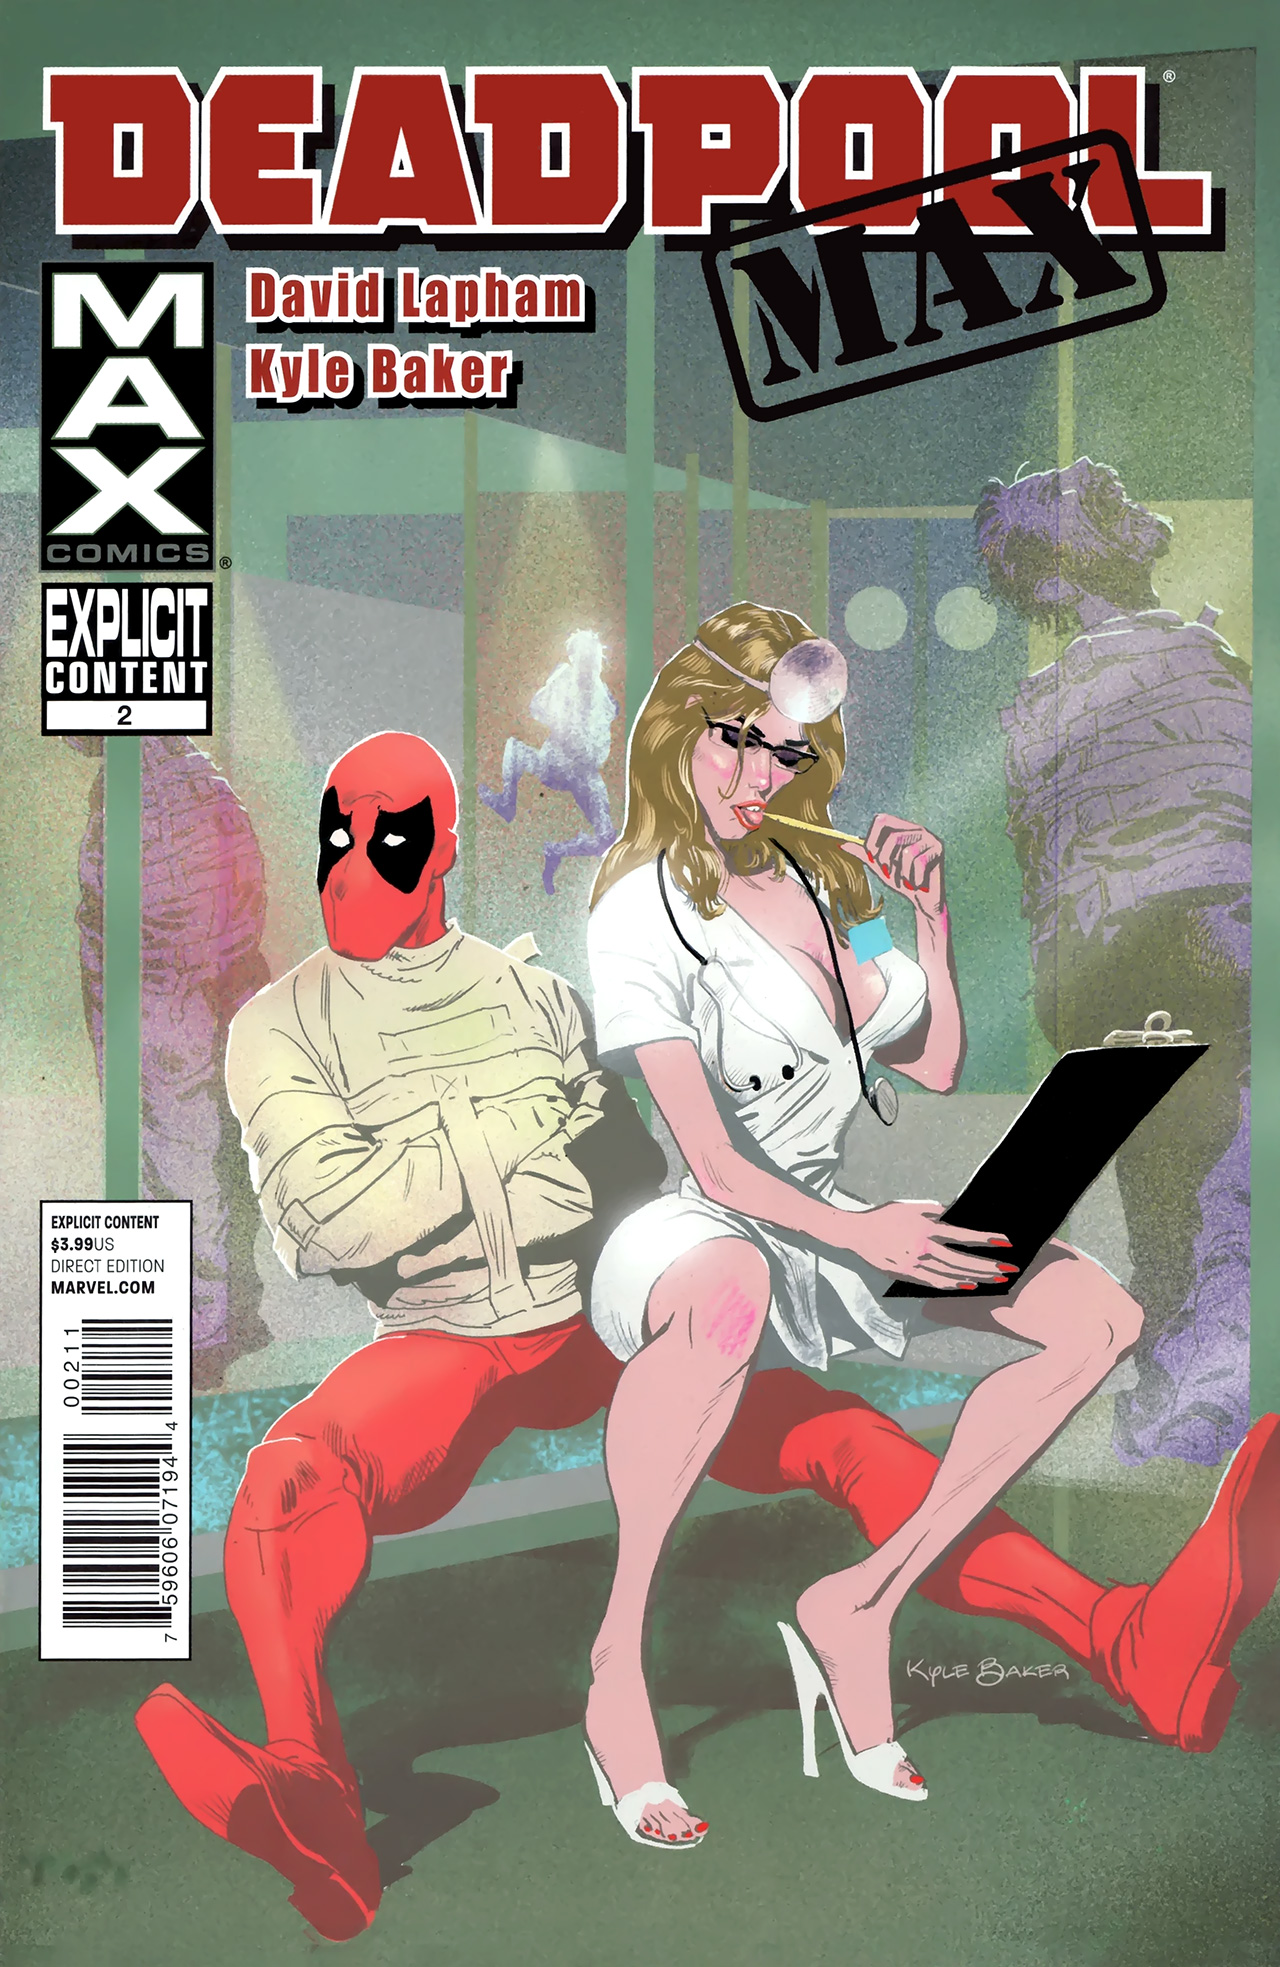 Deadpool Porn Comics - Deadpool Max Issue 2 | Read Deadpool Max Issue 2 comic online in high  quality. Read Full Comic online for free - Read comics online in high  quality .|viewcomiconline.com